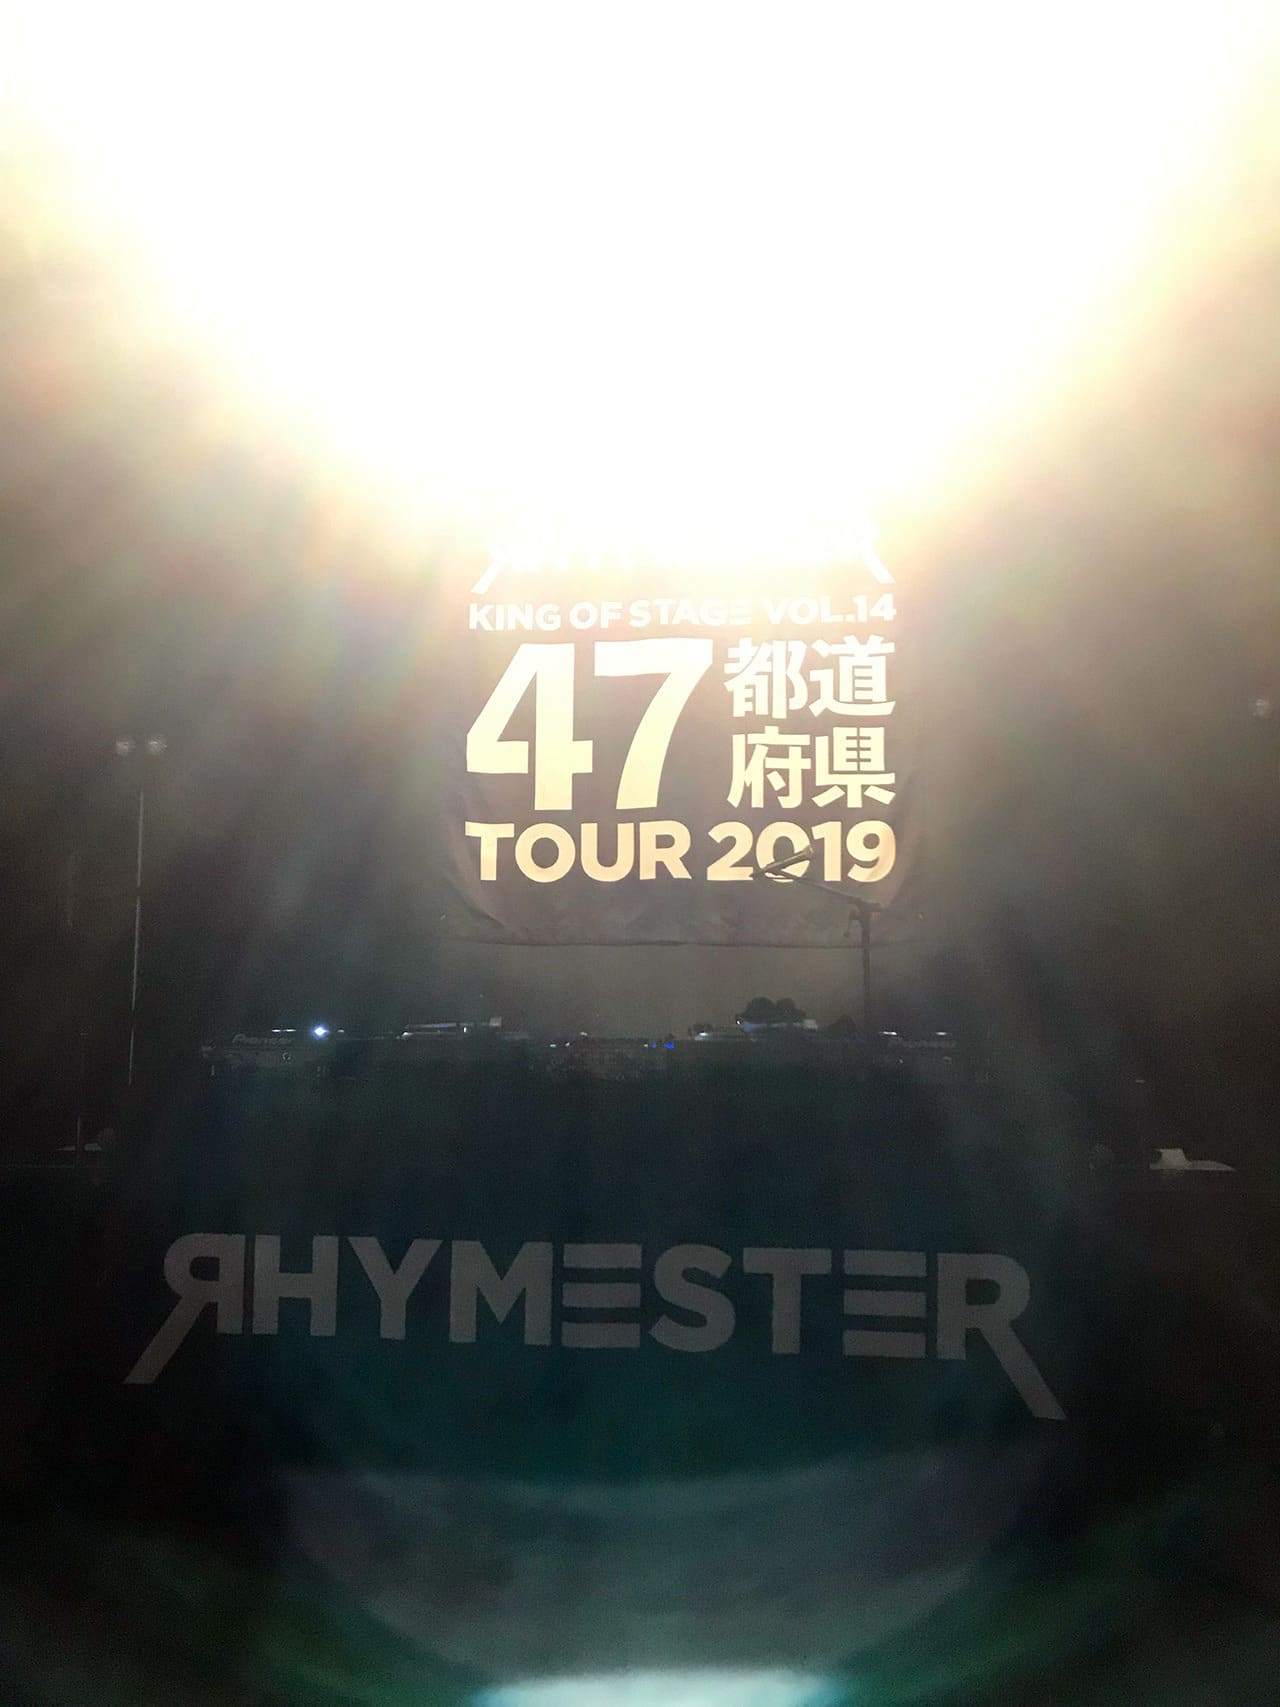 RHYMESTER KING OF STAGE VOL.14 47都道府県TOUR 2019